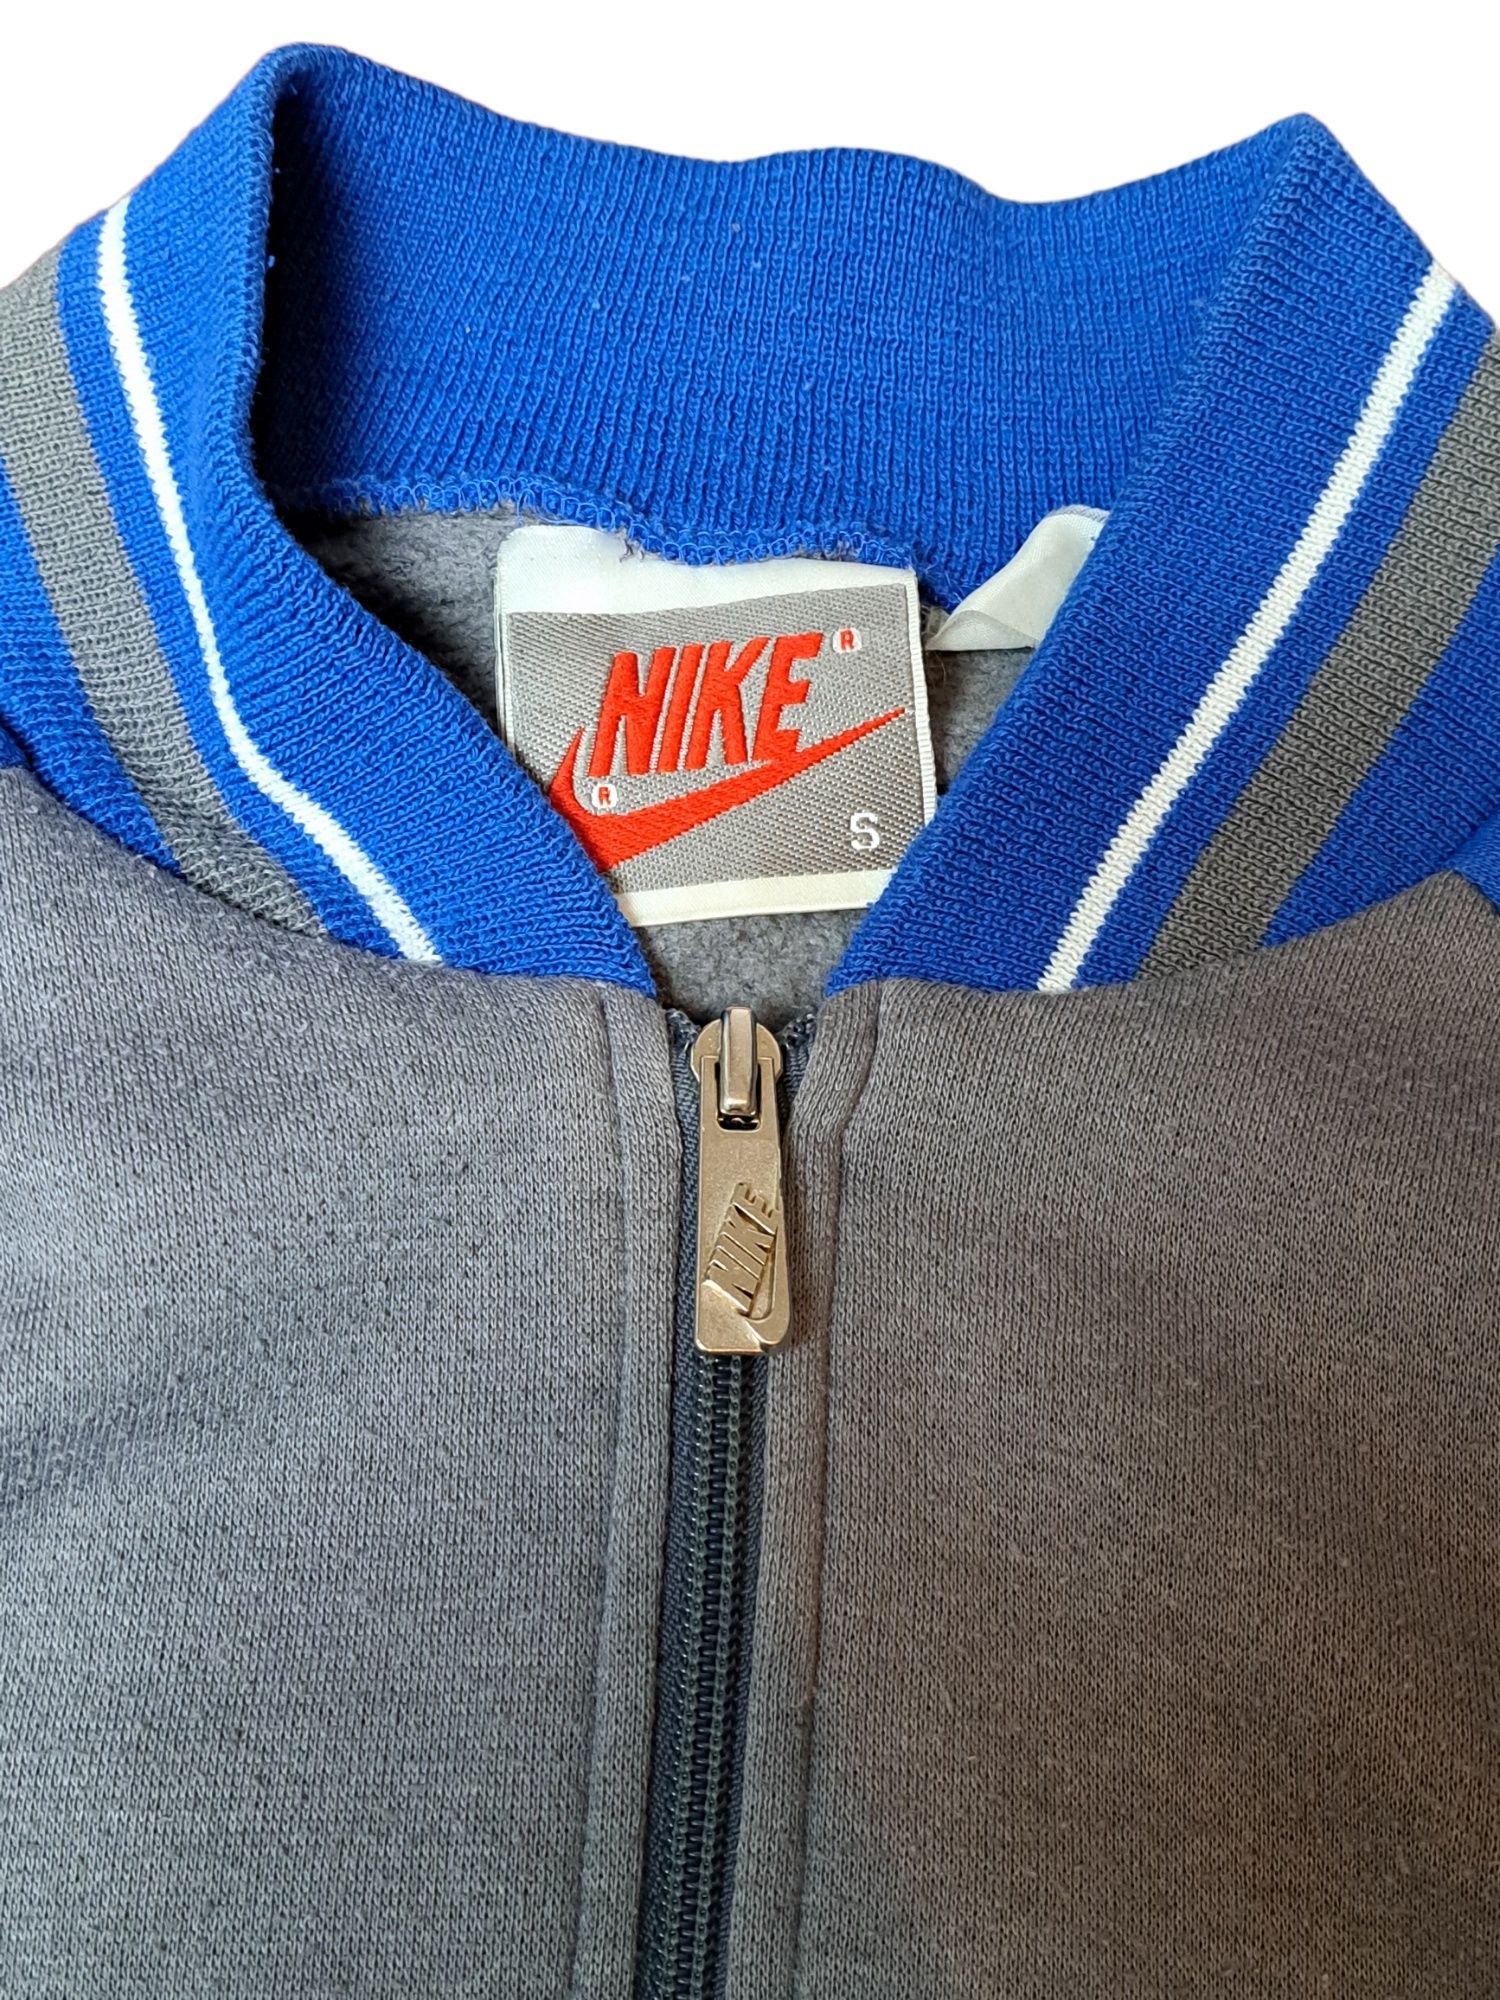 Niebiesko - szara Bluza Bomberka Nike z lat 90s, Adidas Asics Reebok